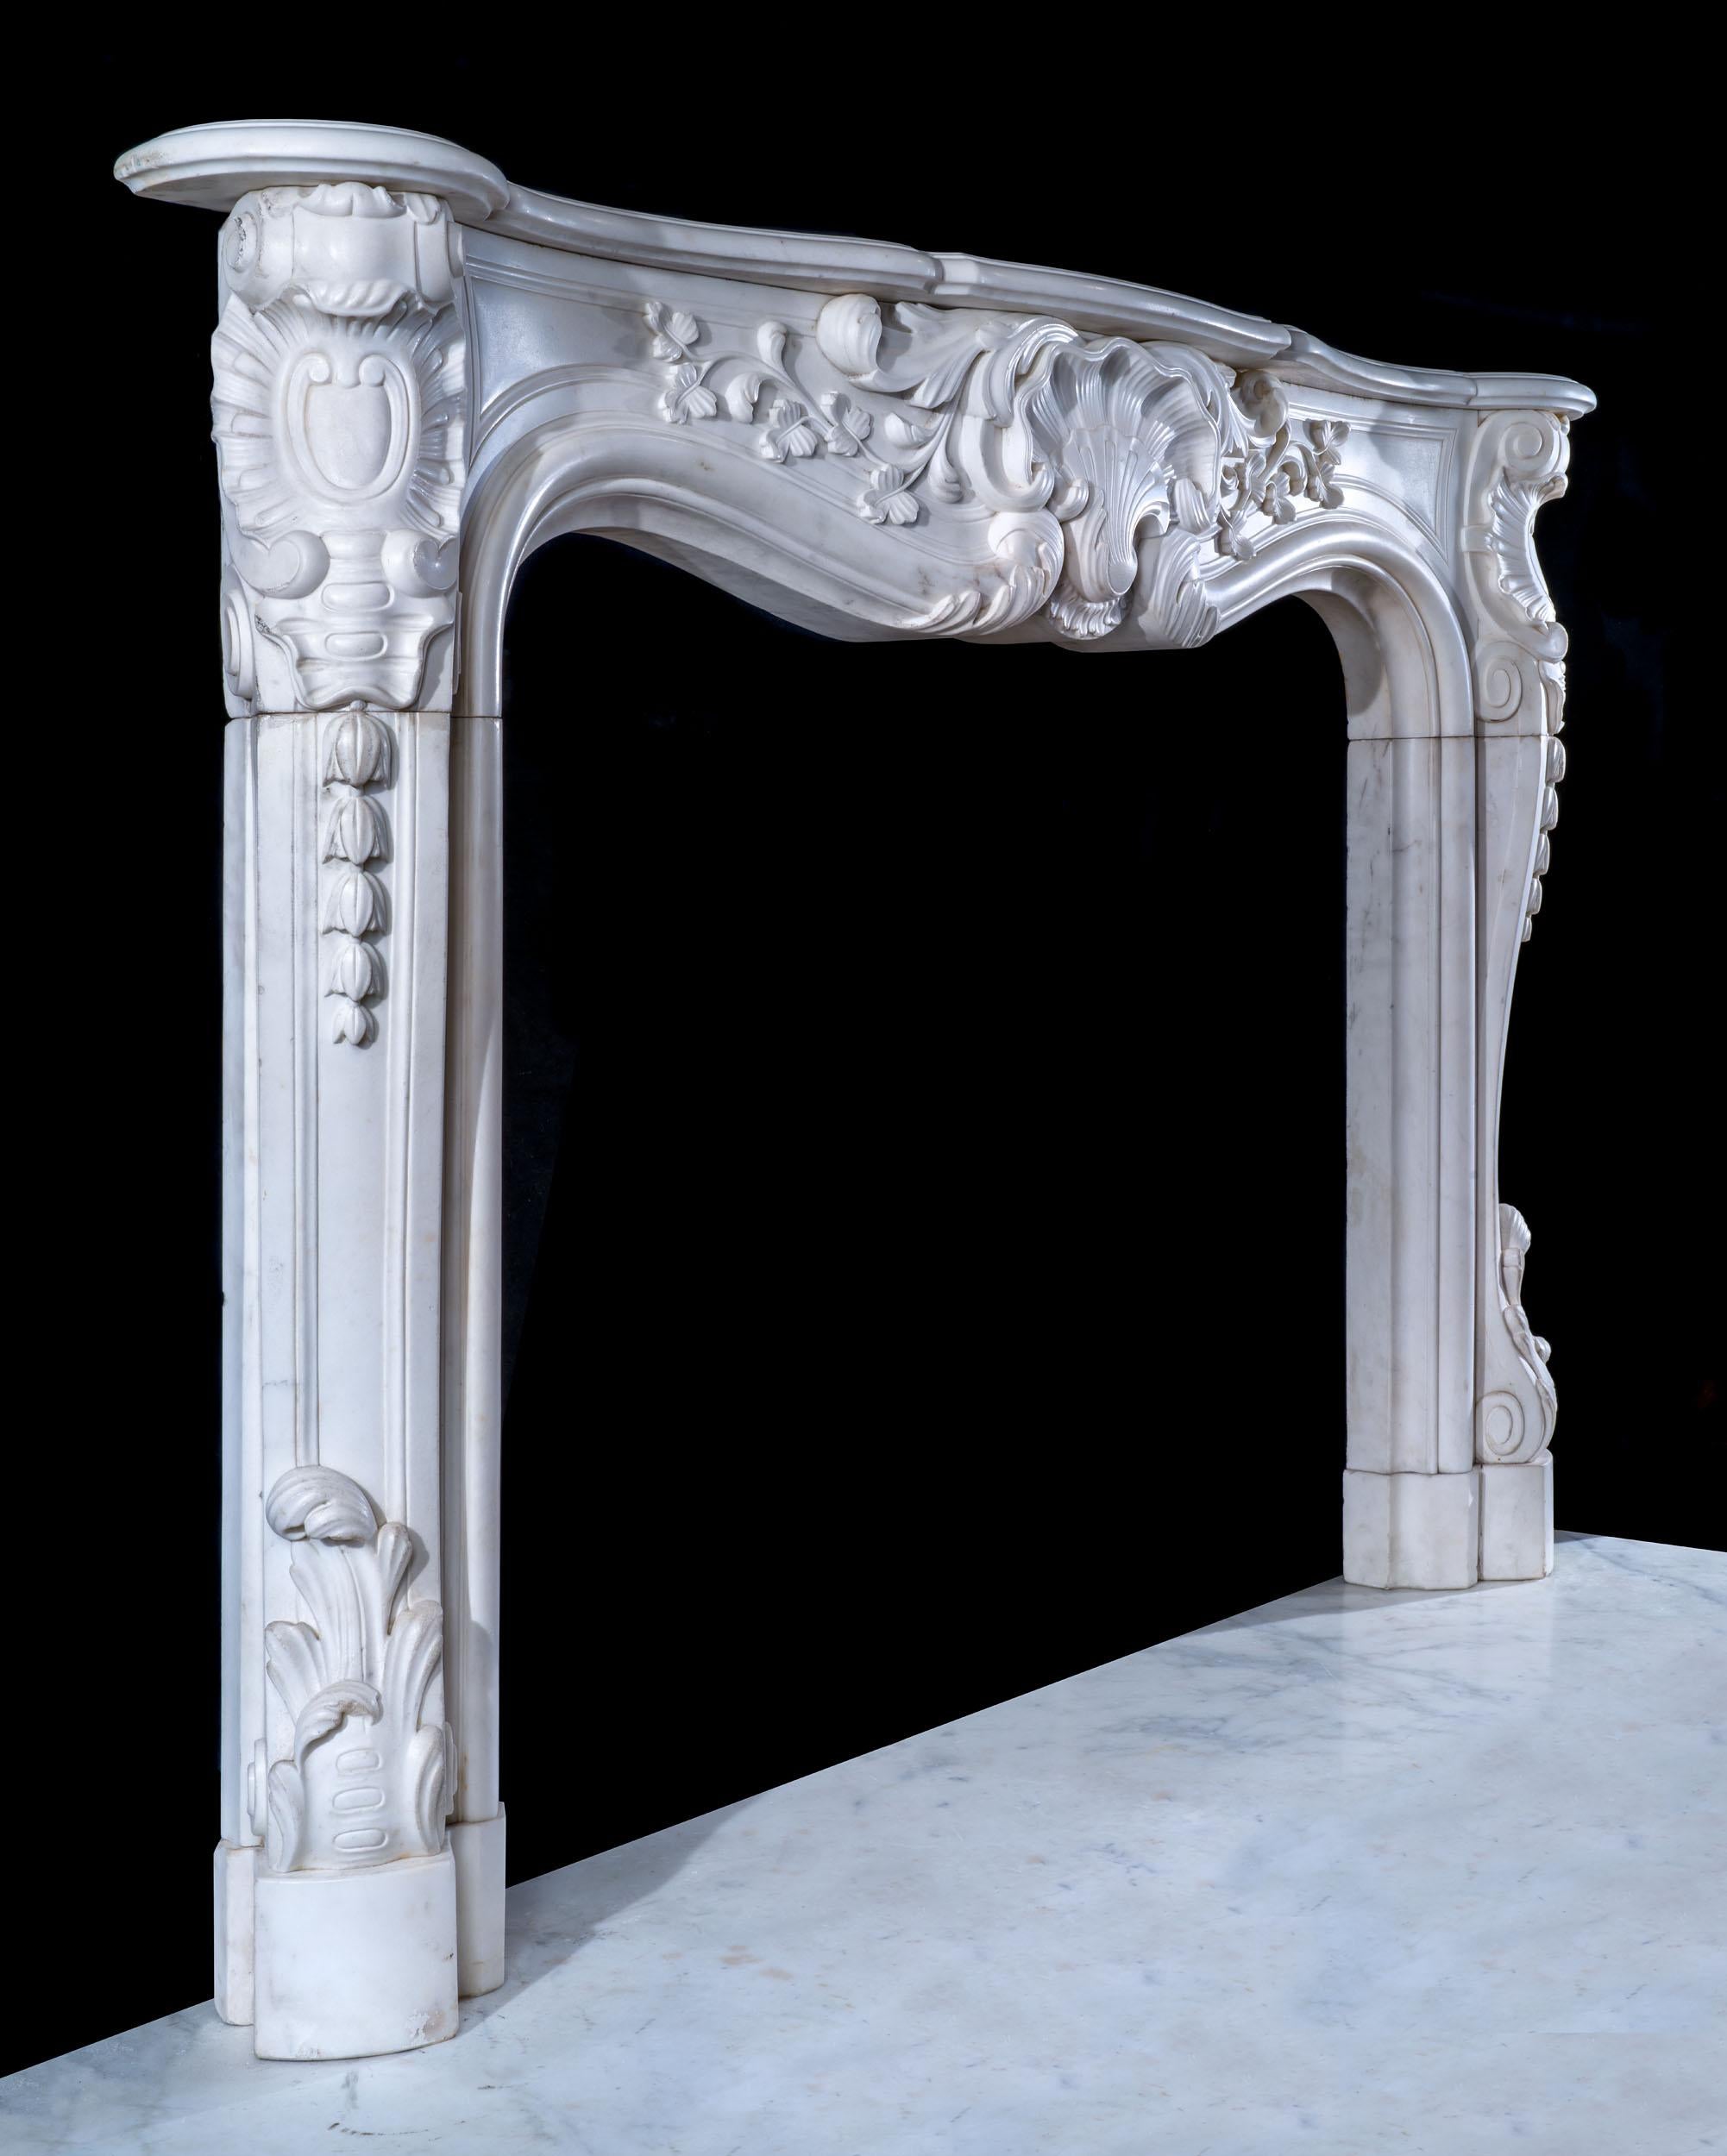 Une belle cheminée écossaise en marbre statuaire rococo. La tablette serpentine moulurée repose sur une frise lambrissée spectaculaire, centrée par un motif de grillage et un décor de feuillage en volutes. Ceci est reflété par les blocs d'enclos à